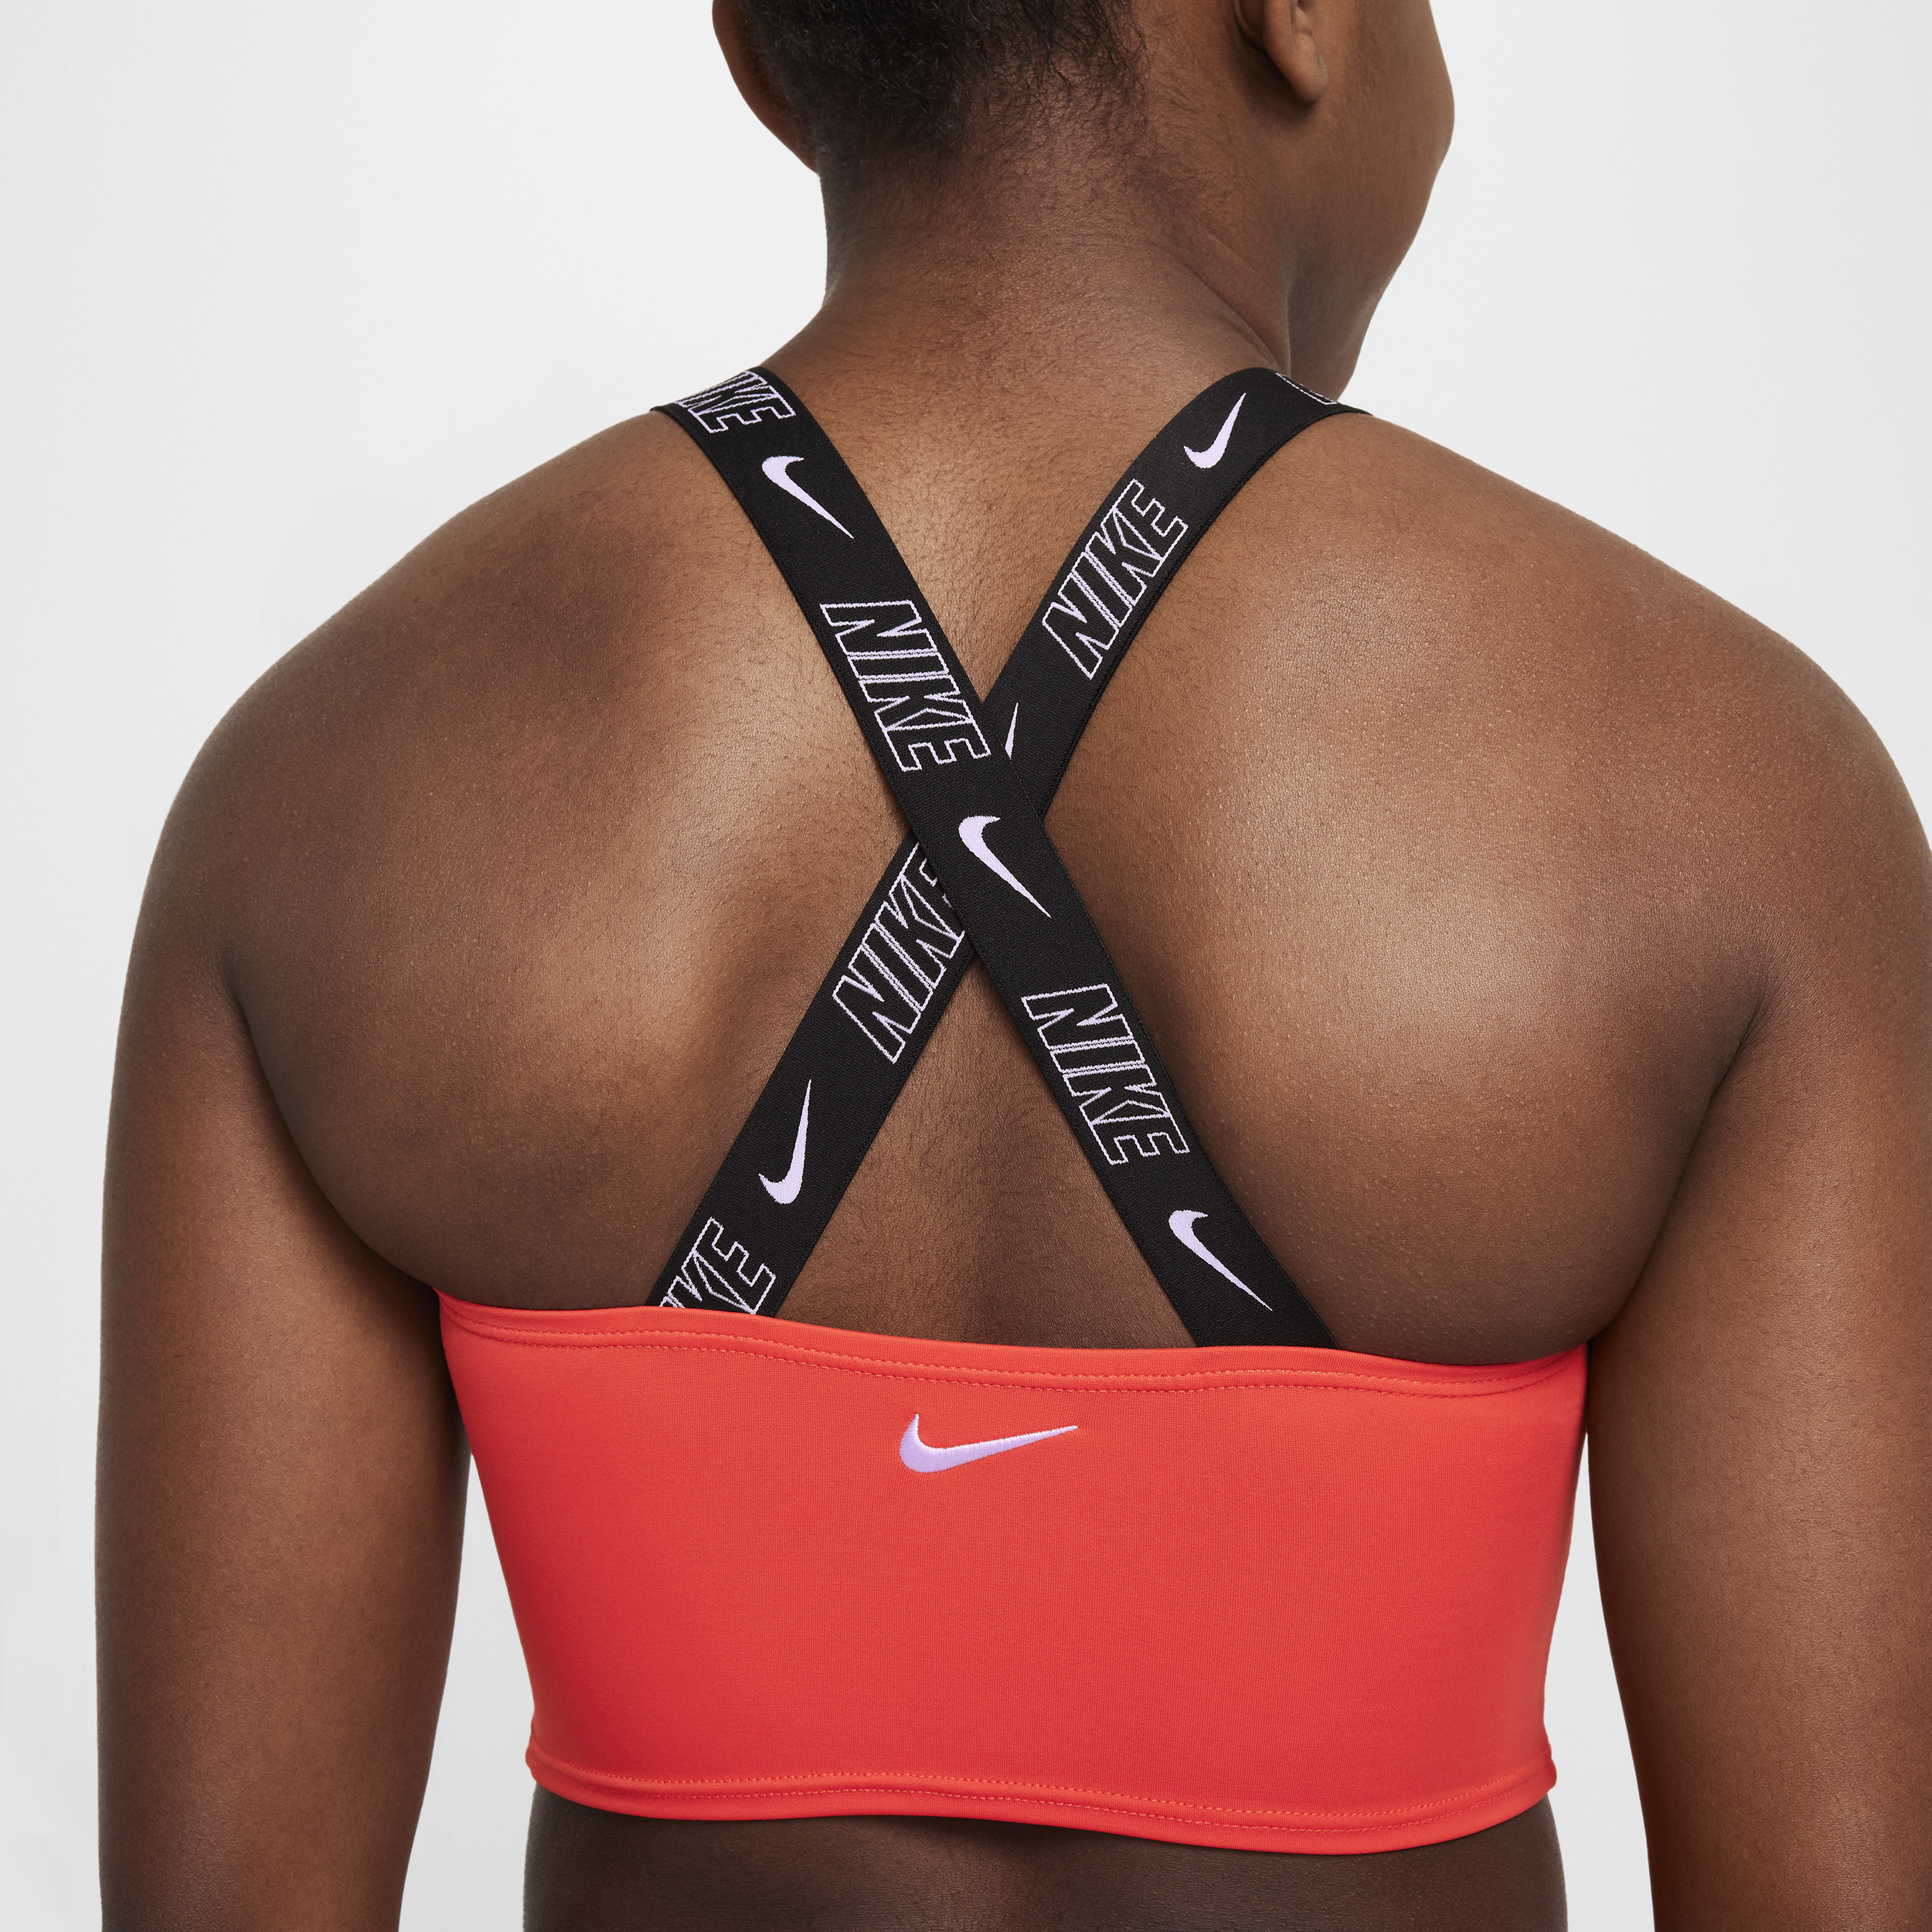 Nike Swim midkiniset met gekruiste bandjes voor meisjes Rood